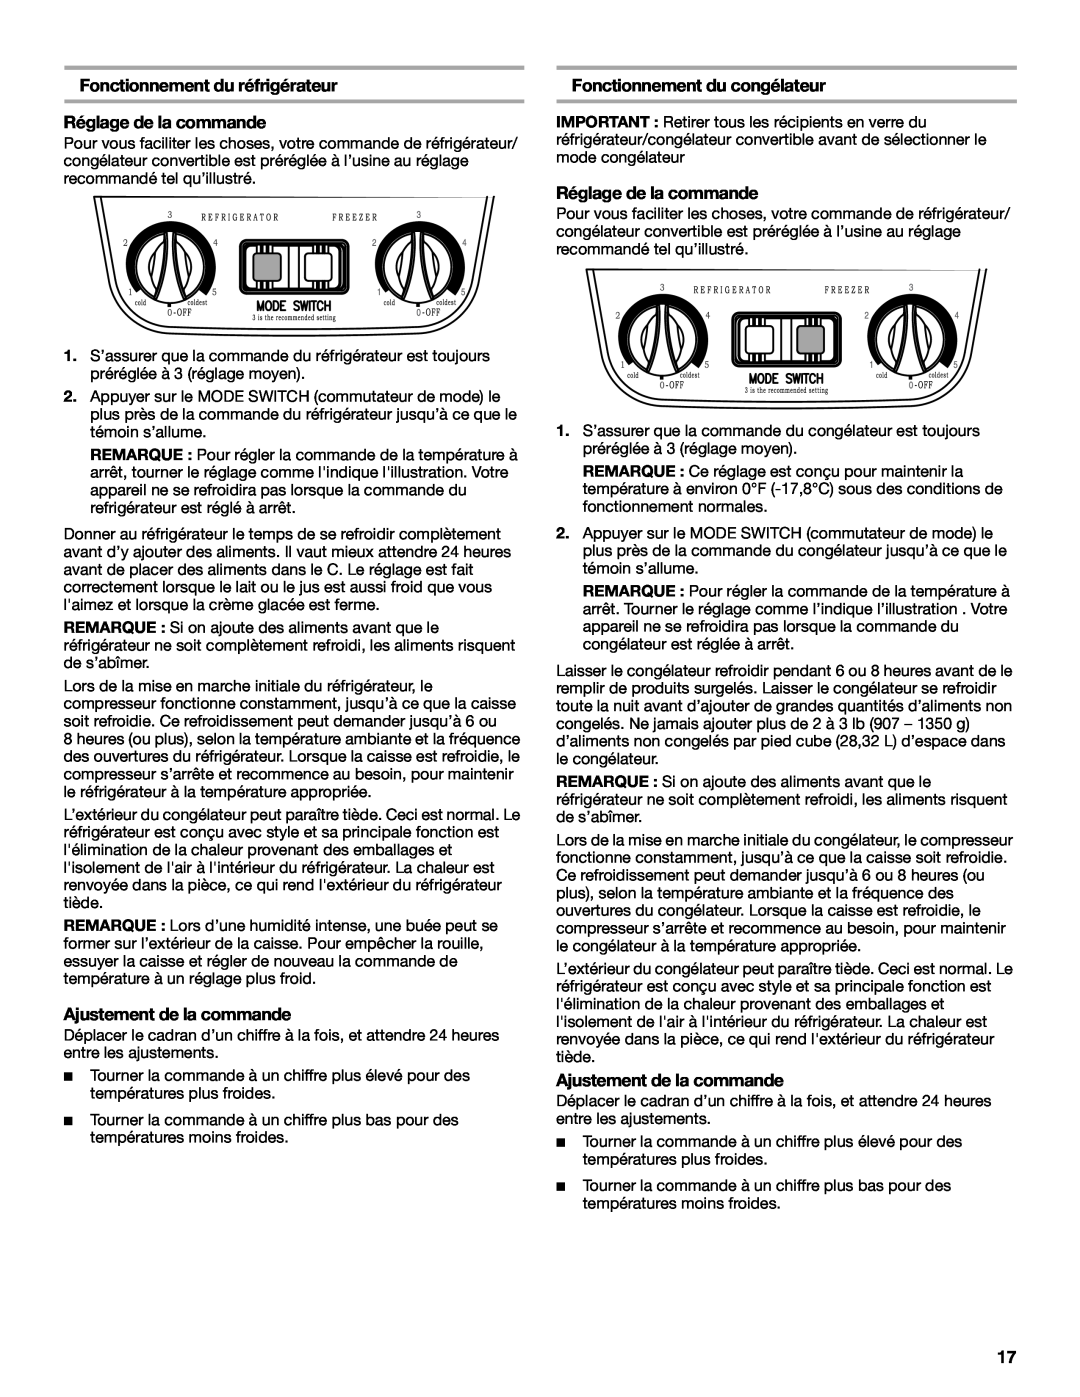 Whirlpool EL7JWKLMQ00 manual Fonctionnement du réfrigérateur Réglage de la commande, Ajustement de la commande 